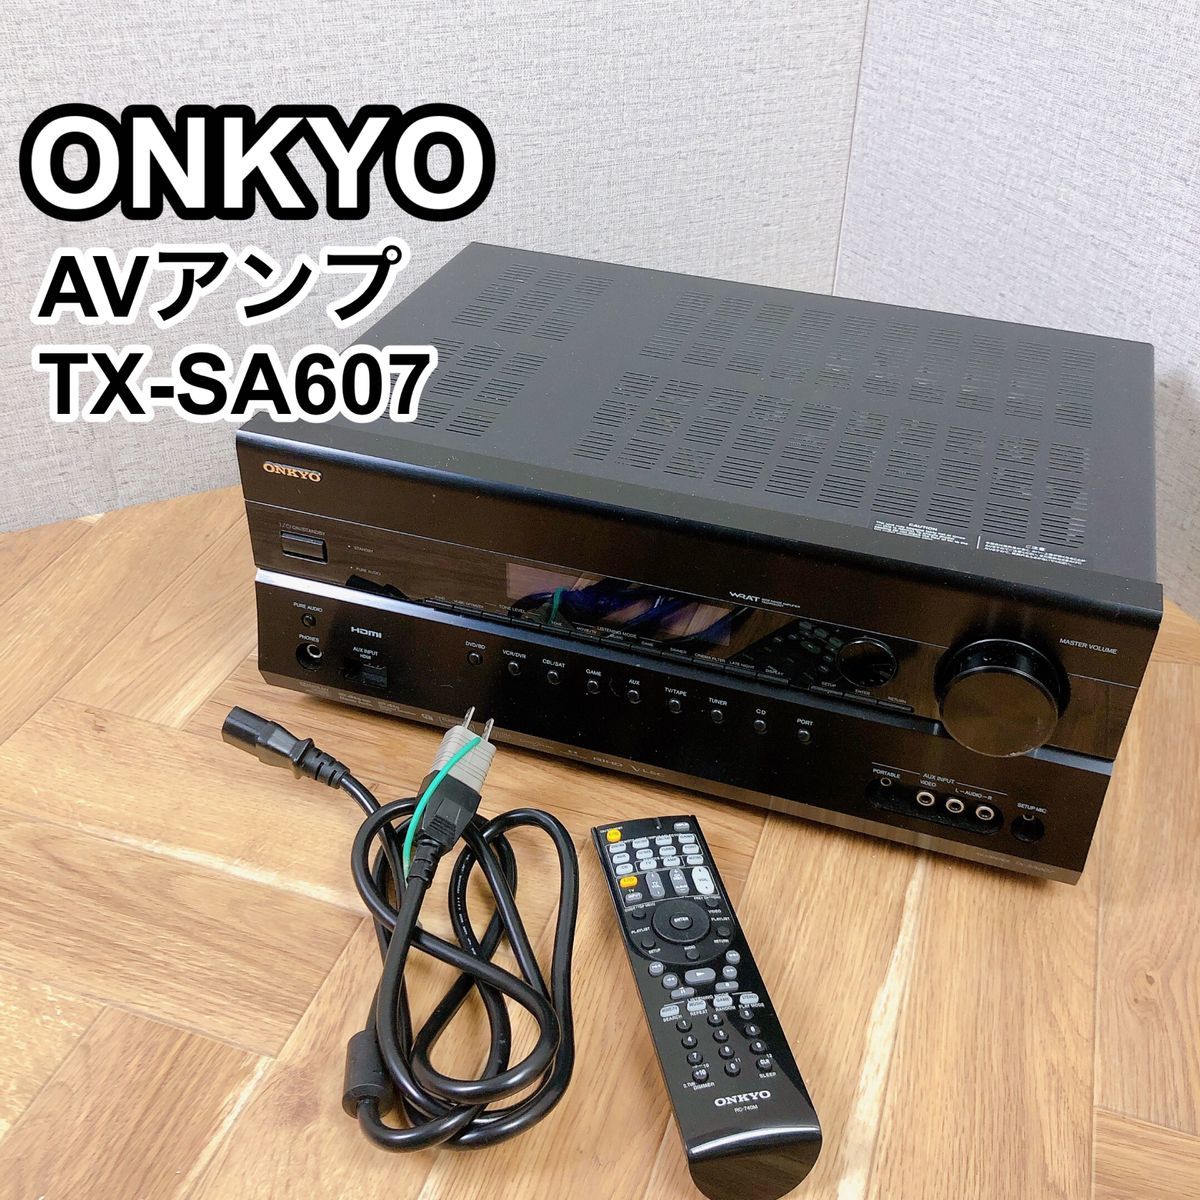 ONKYO Onkyo AV amplifier TX-SA607